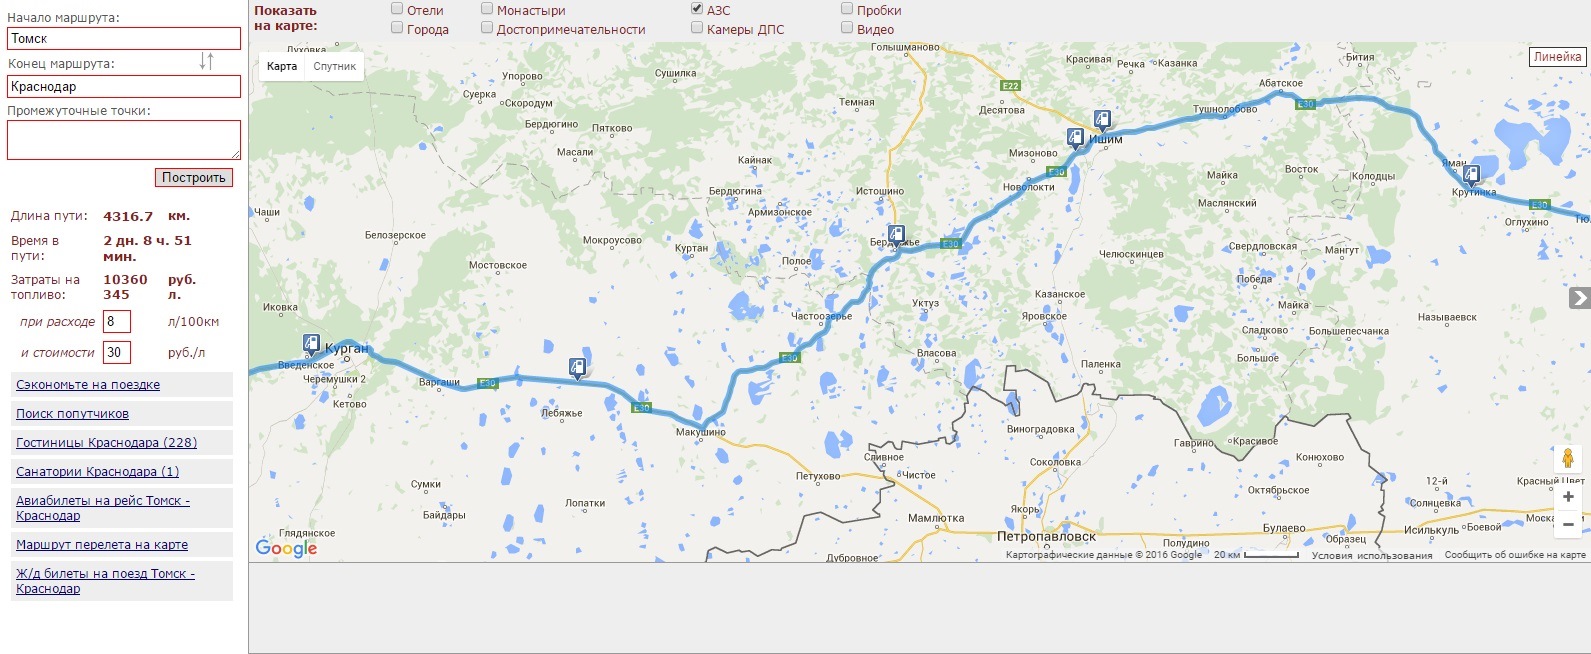 Курган путь. Курган Краснодар маршрут. Курган Томск на карте. Курган-Томск расстояние на машине. От Кургана до Томска.